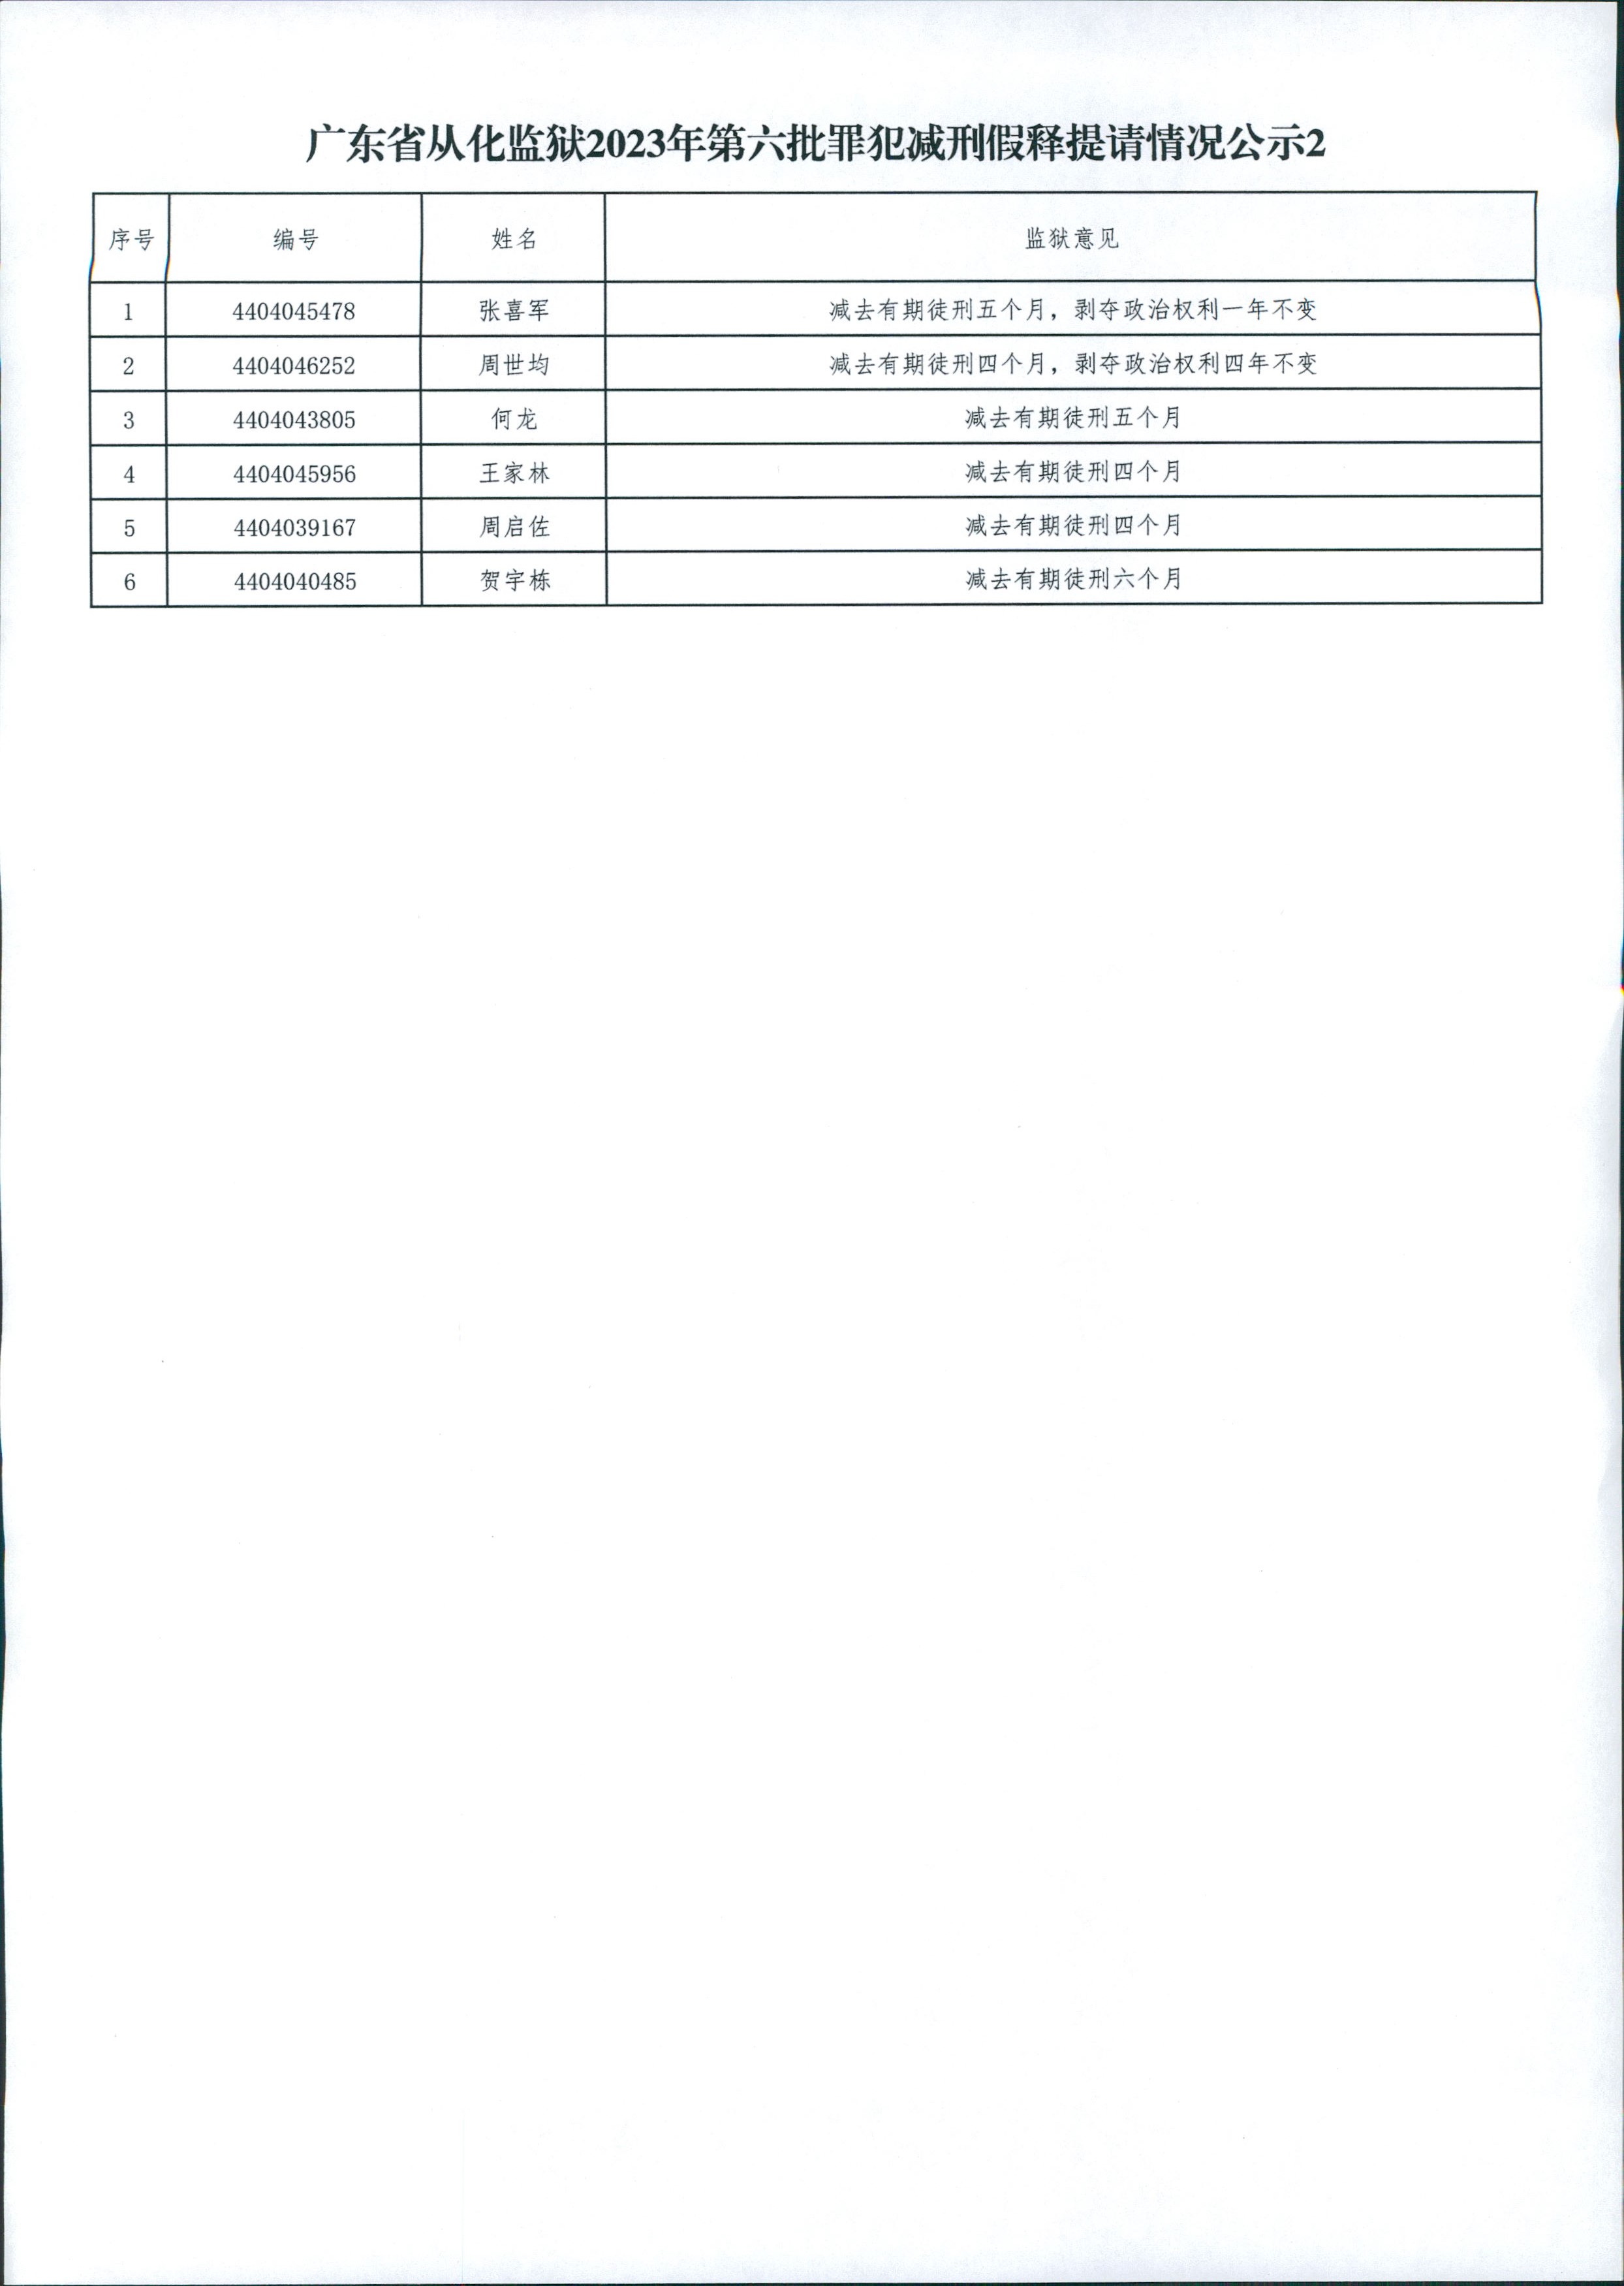 广东省从化监狱2023年第6批罪犯减刑假释提请情况公示2.jpg